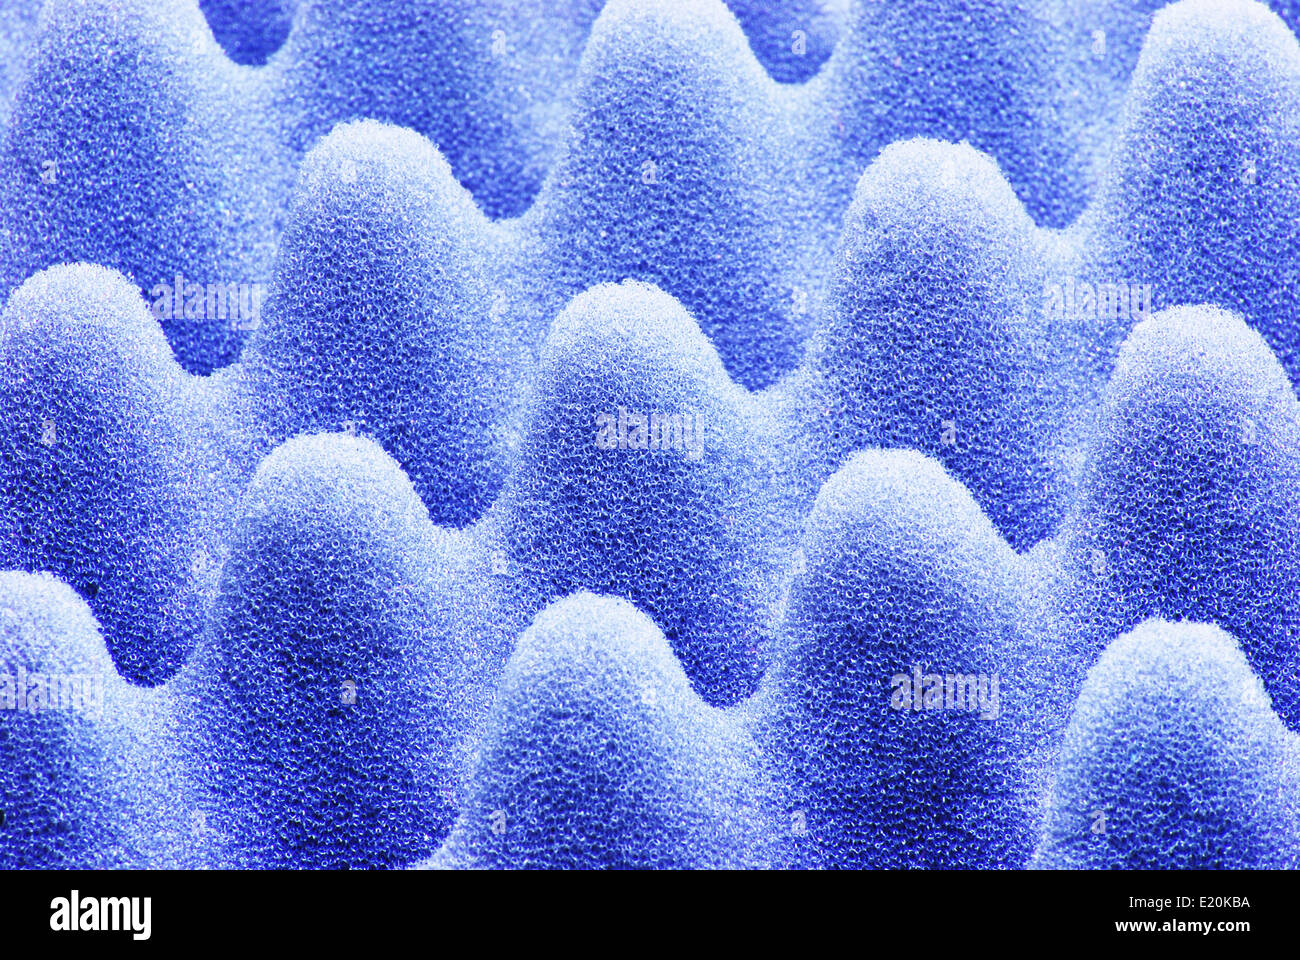 micro sponge texture Stock Photo